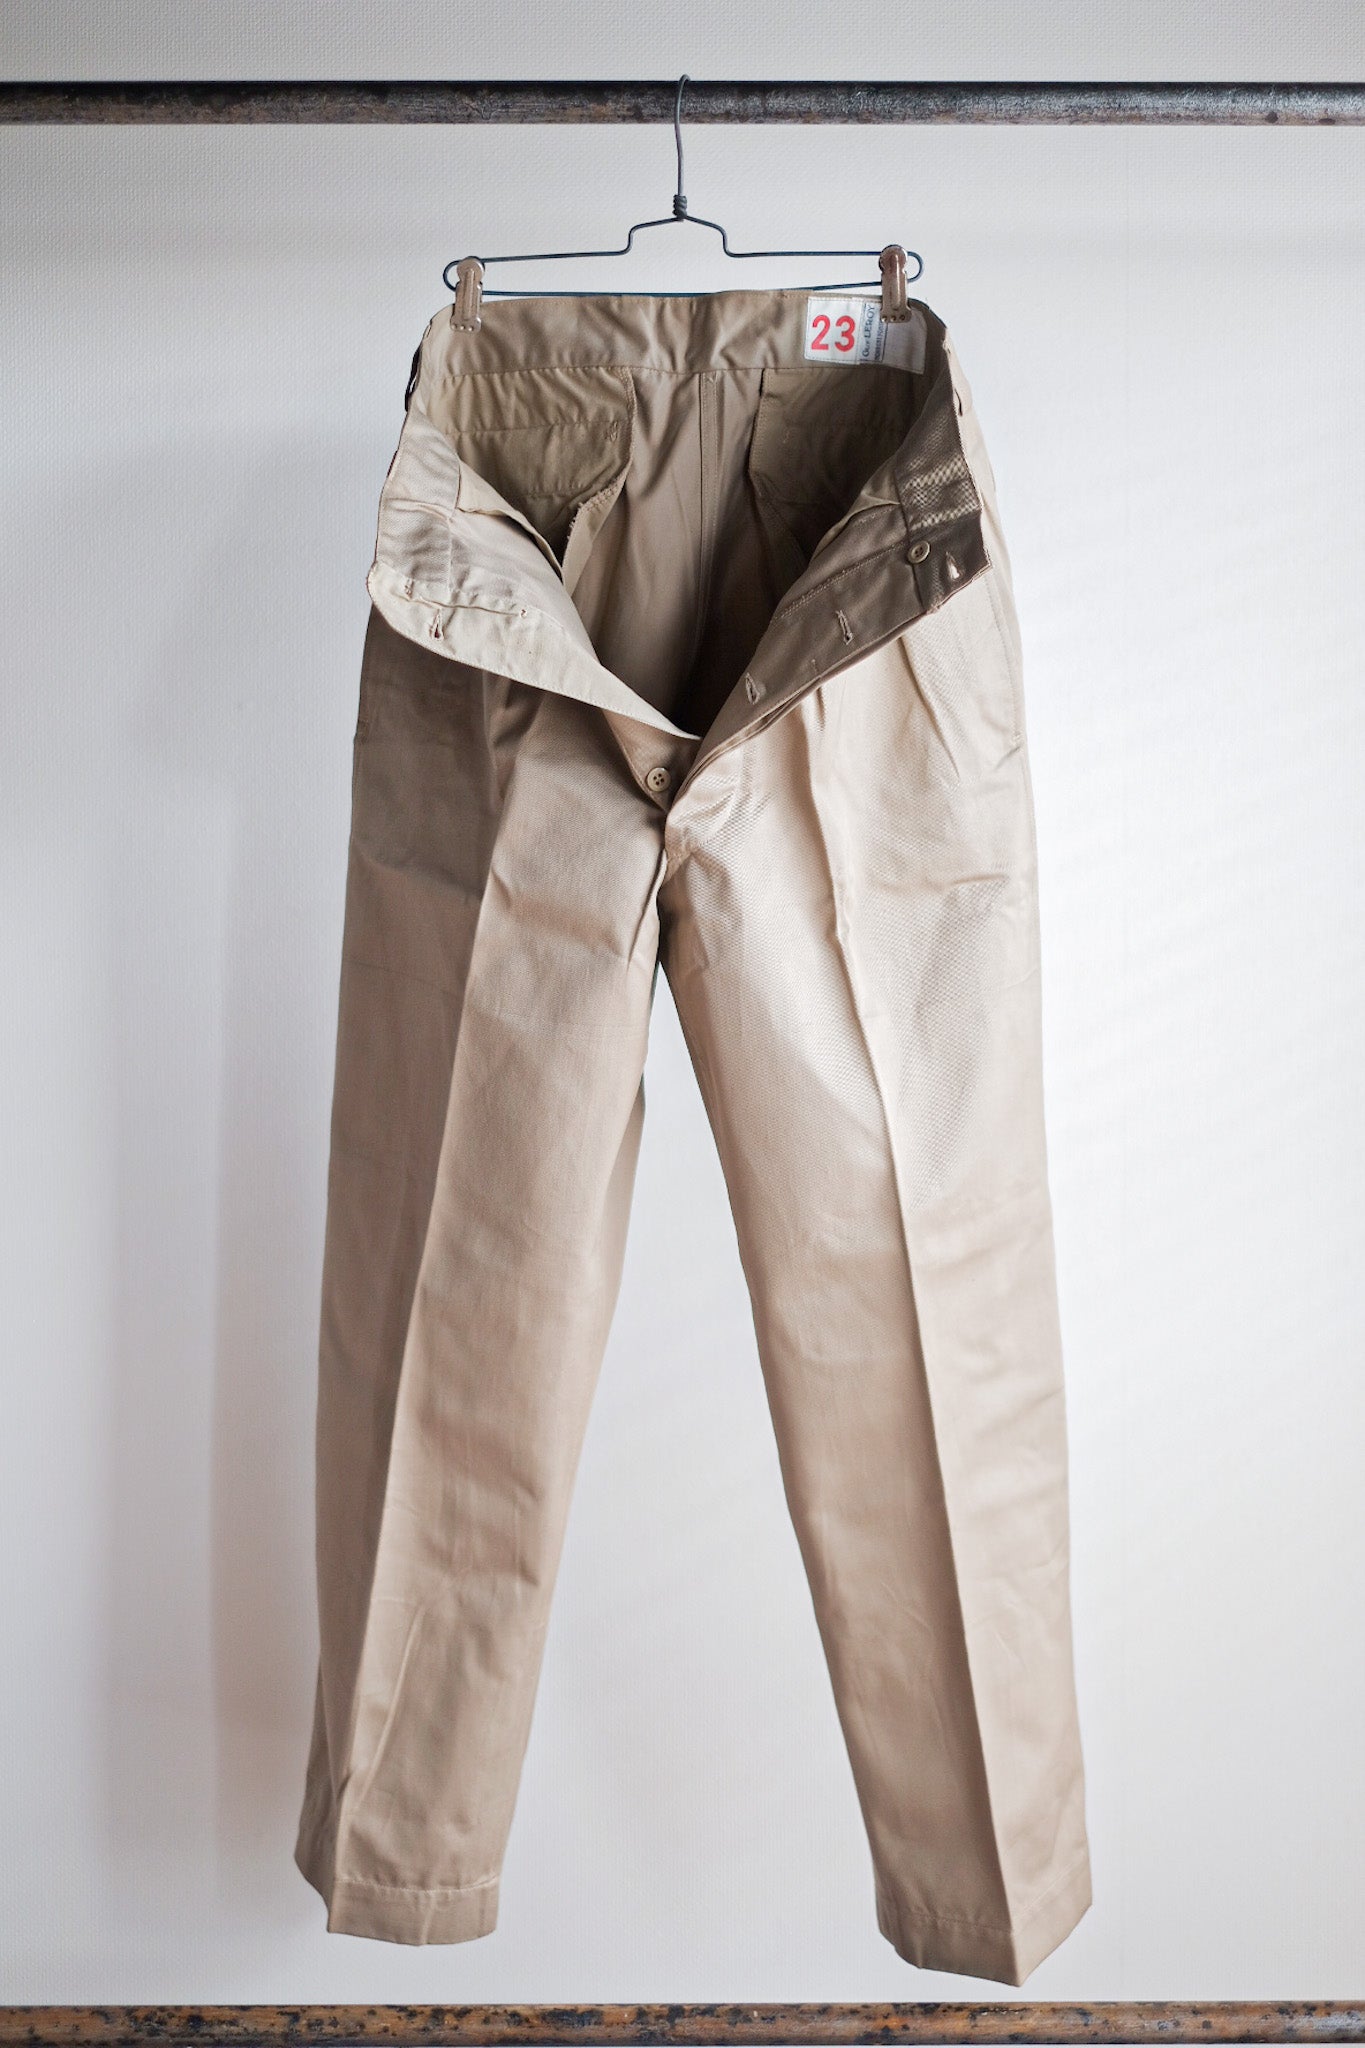 [~ 60's] Taille des pantalons chino de l'armée française M52.23 "Stock mort"